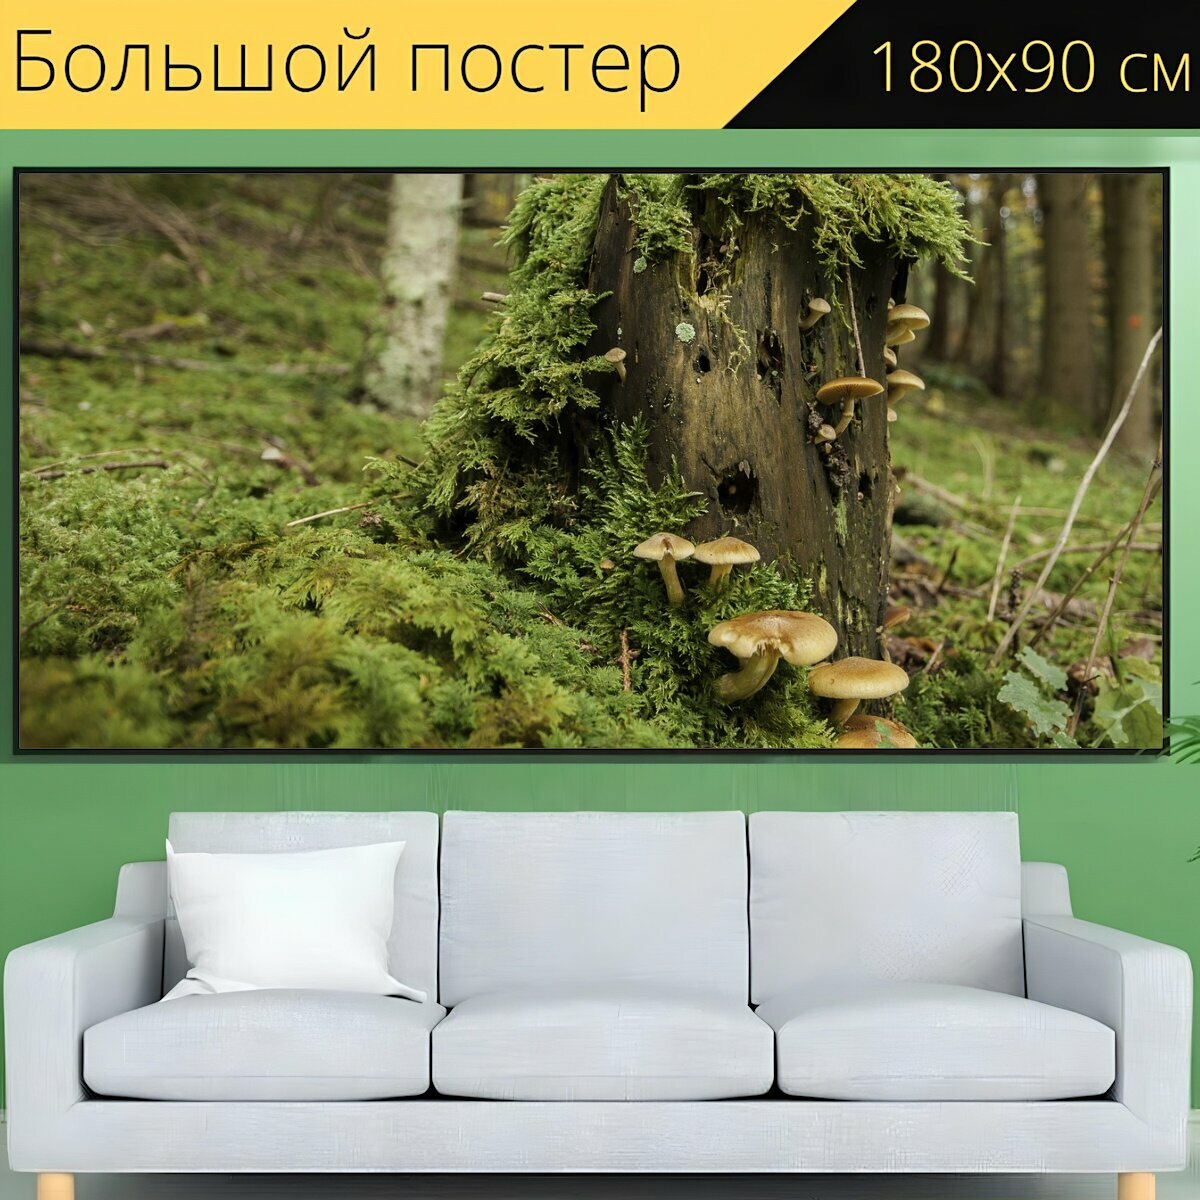 Большой постер "Лес, дерево грибов, ствол дерева" 180 x 90 см. для интерьера